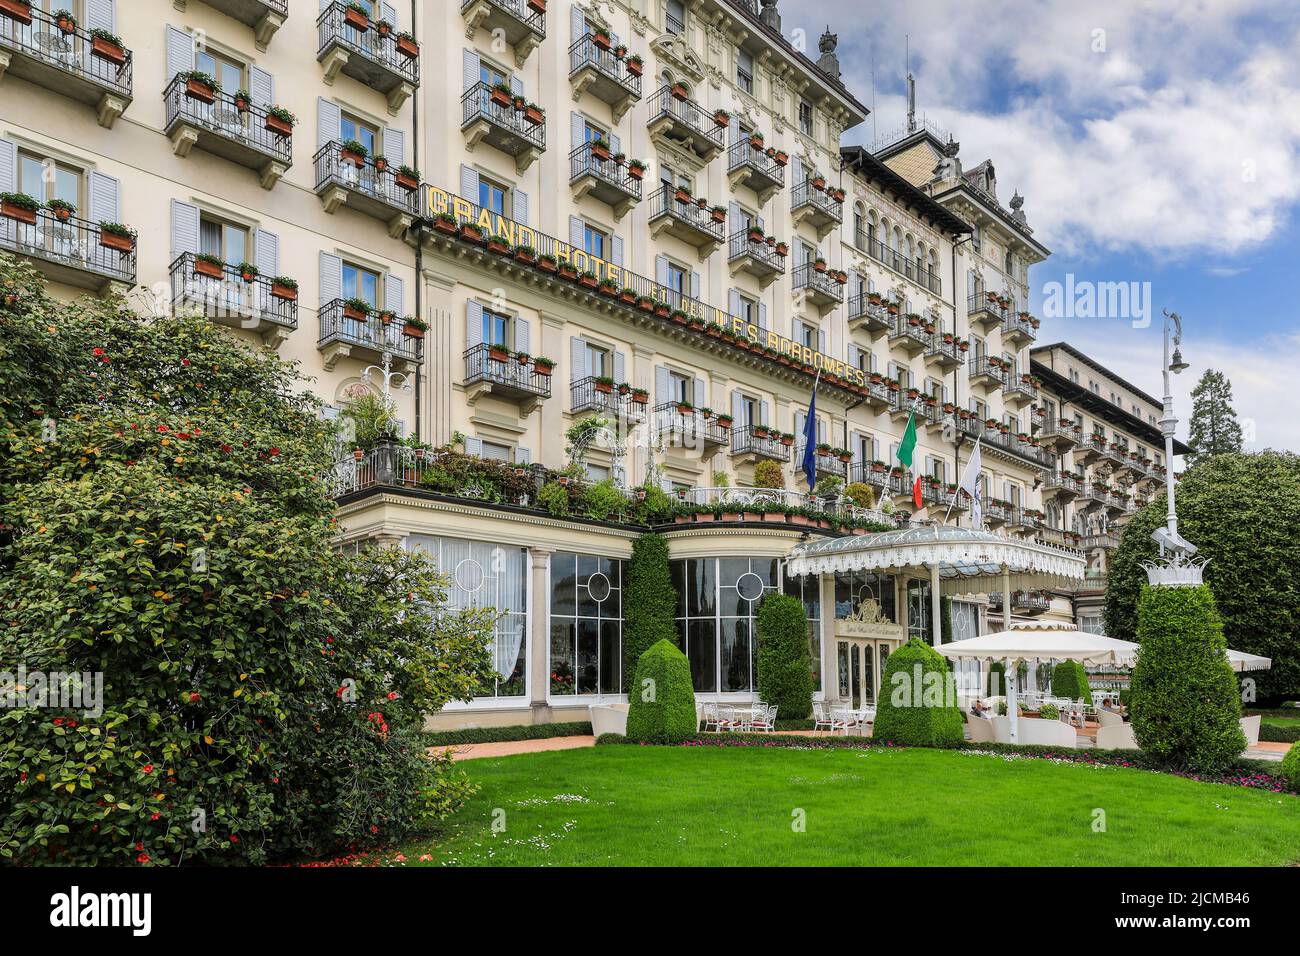 The facade of the Grand Hotel des Iles Borromees, Stresa, Lake Maggiore, Italy Stock Photo